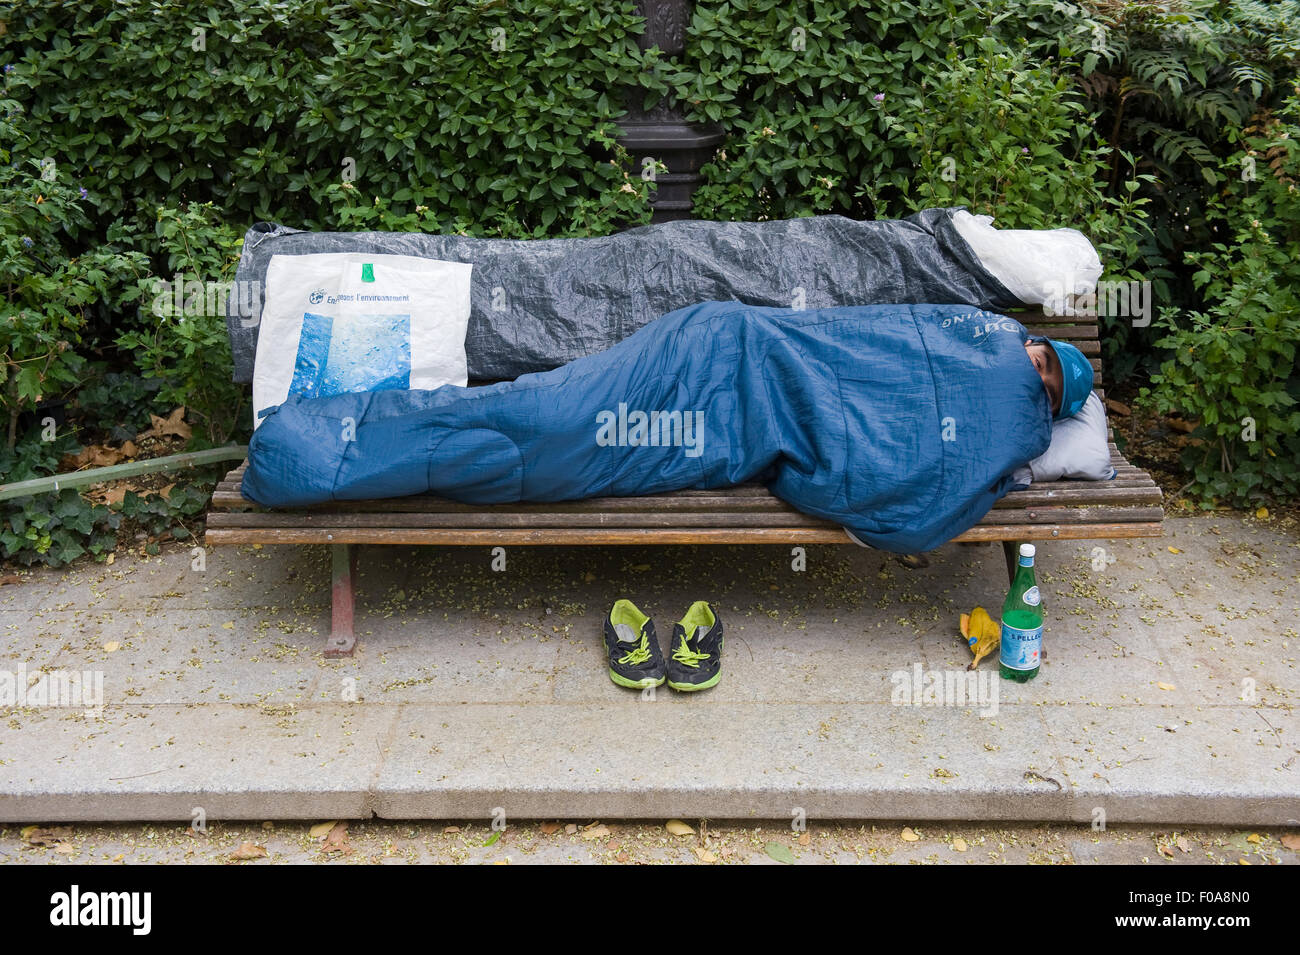 PARIS, Frankreich - 27. Juli 2015: Ein Obdachloser auf einer Bank in einem Park in Paris in Frankreich schläft Stockfoto